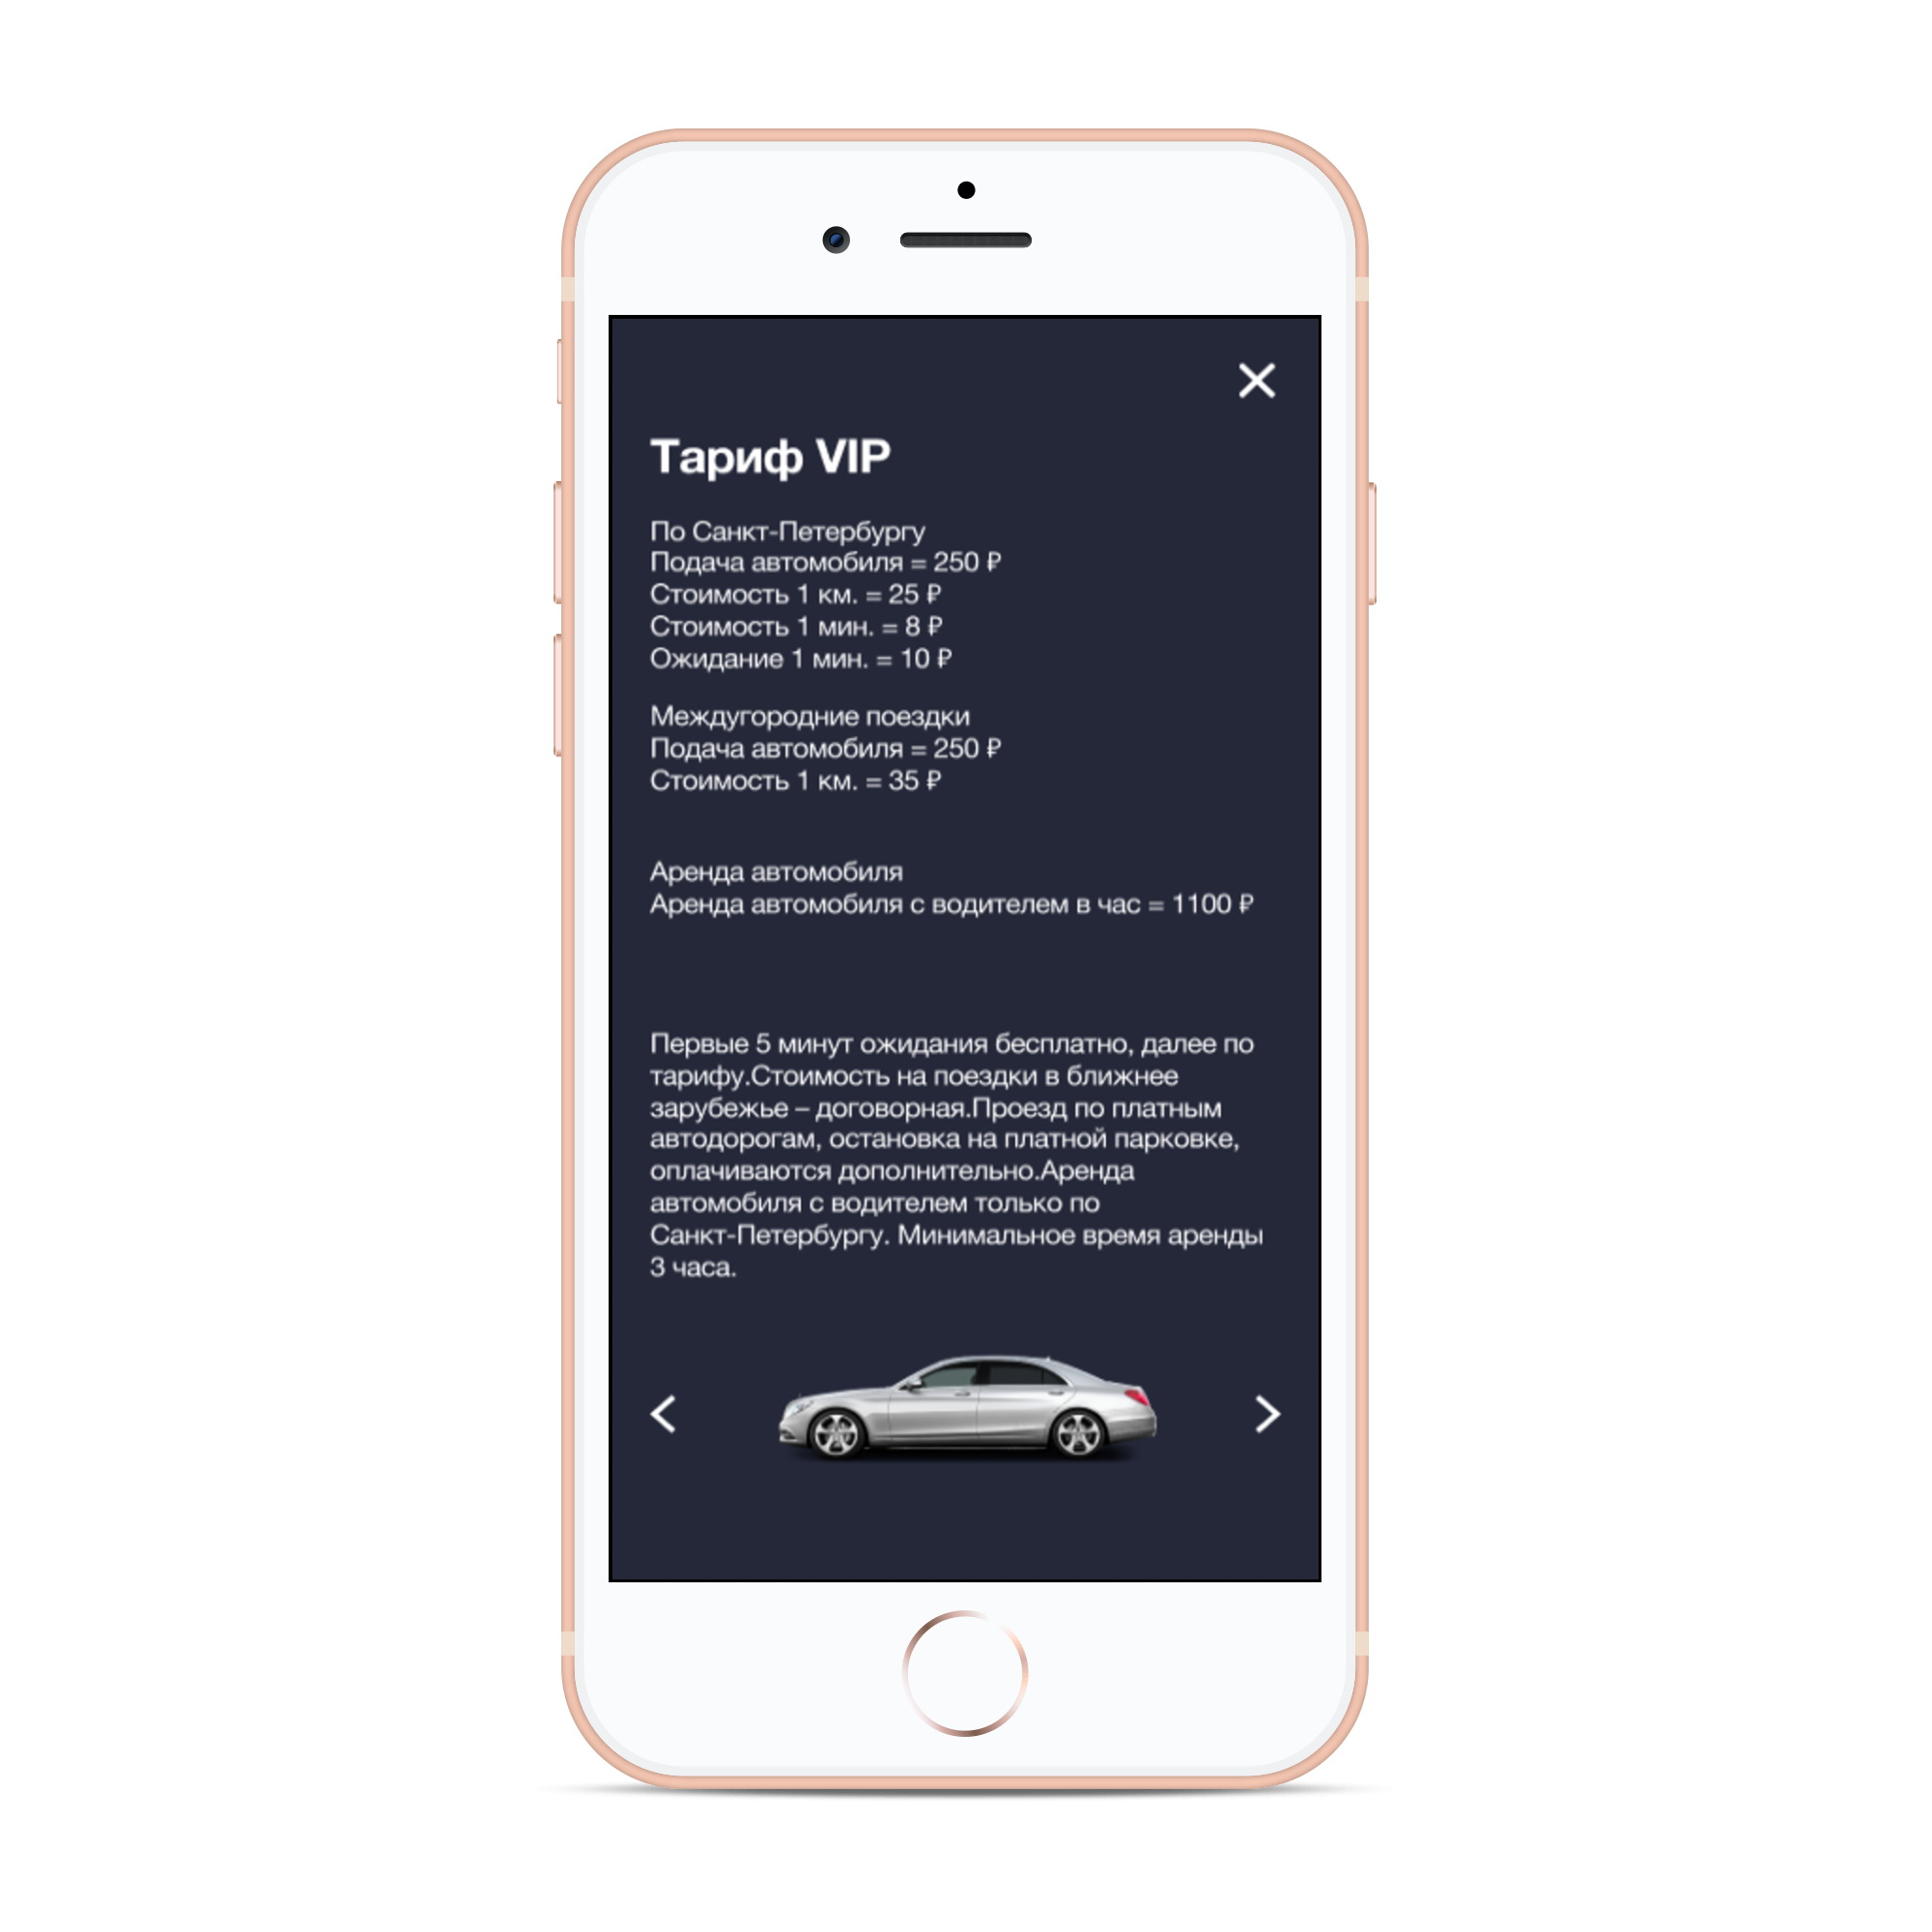 Тарифы. Раздел мобильного приложения для такси Omcar